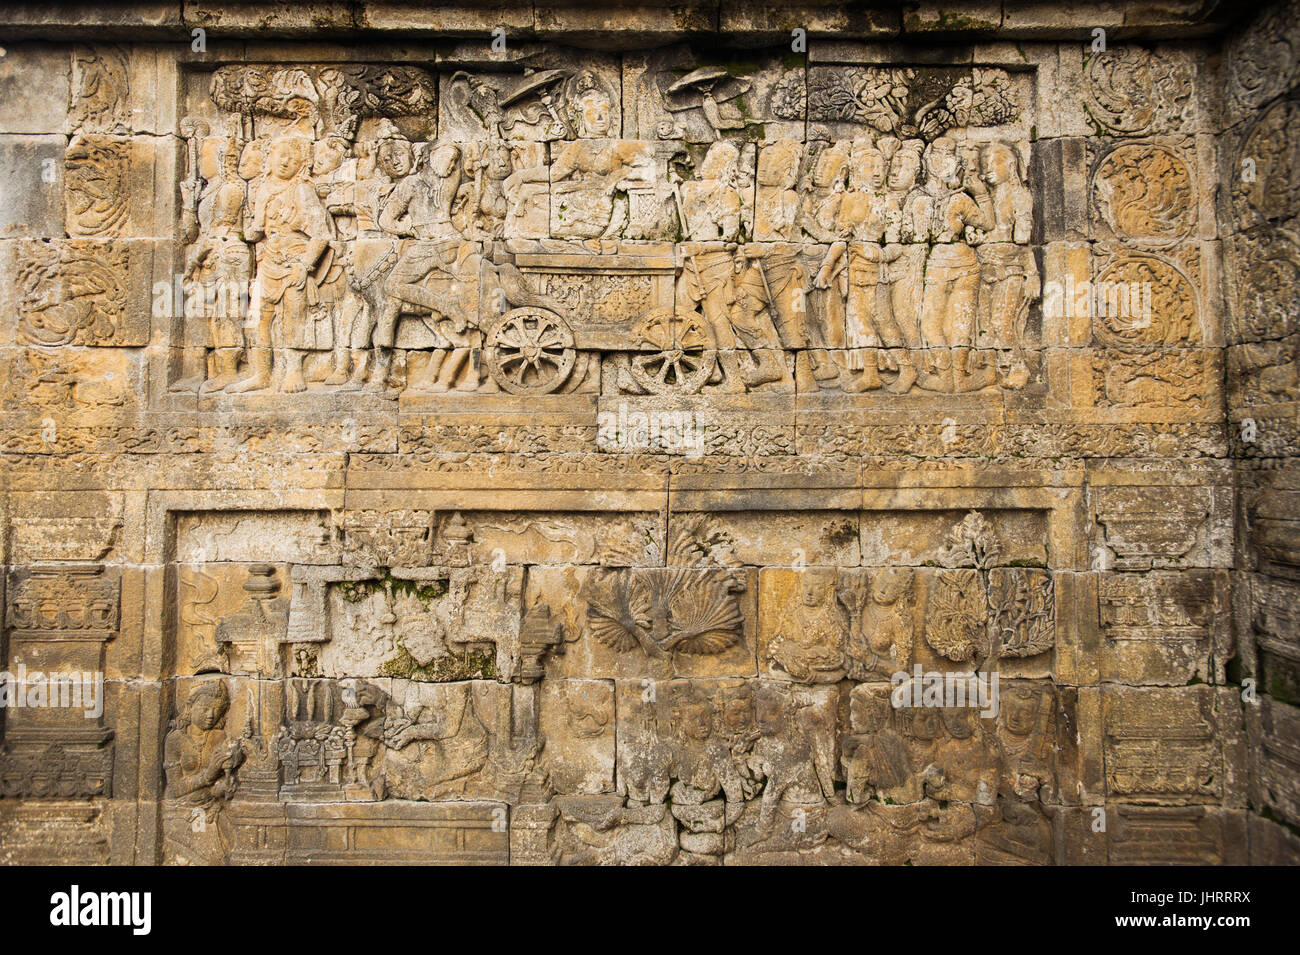 Vue panoramique d'un relief racontant l'histoire de Gautama Siddhartha Temple de Borobudur Java Indonésie. Banque D'Images